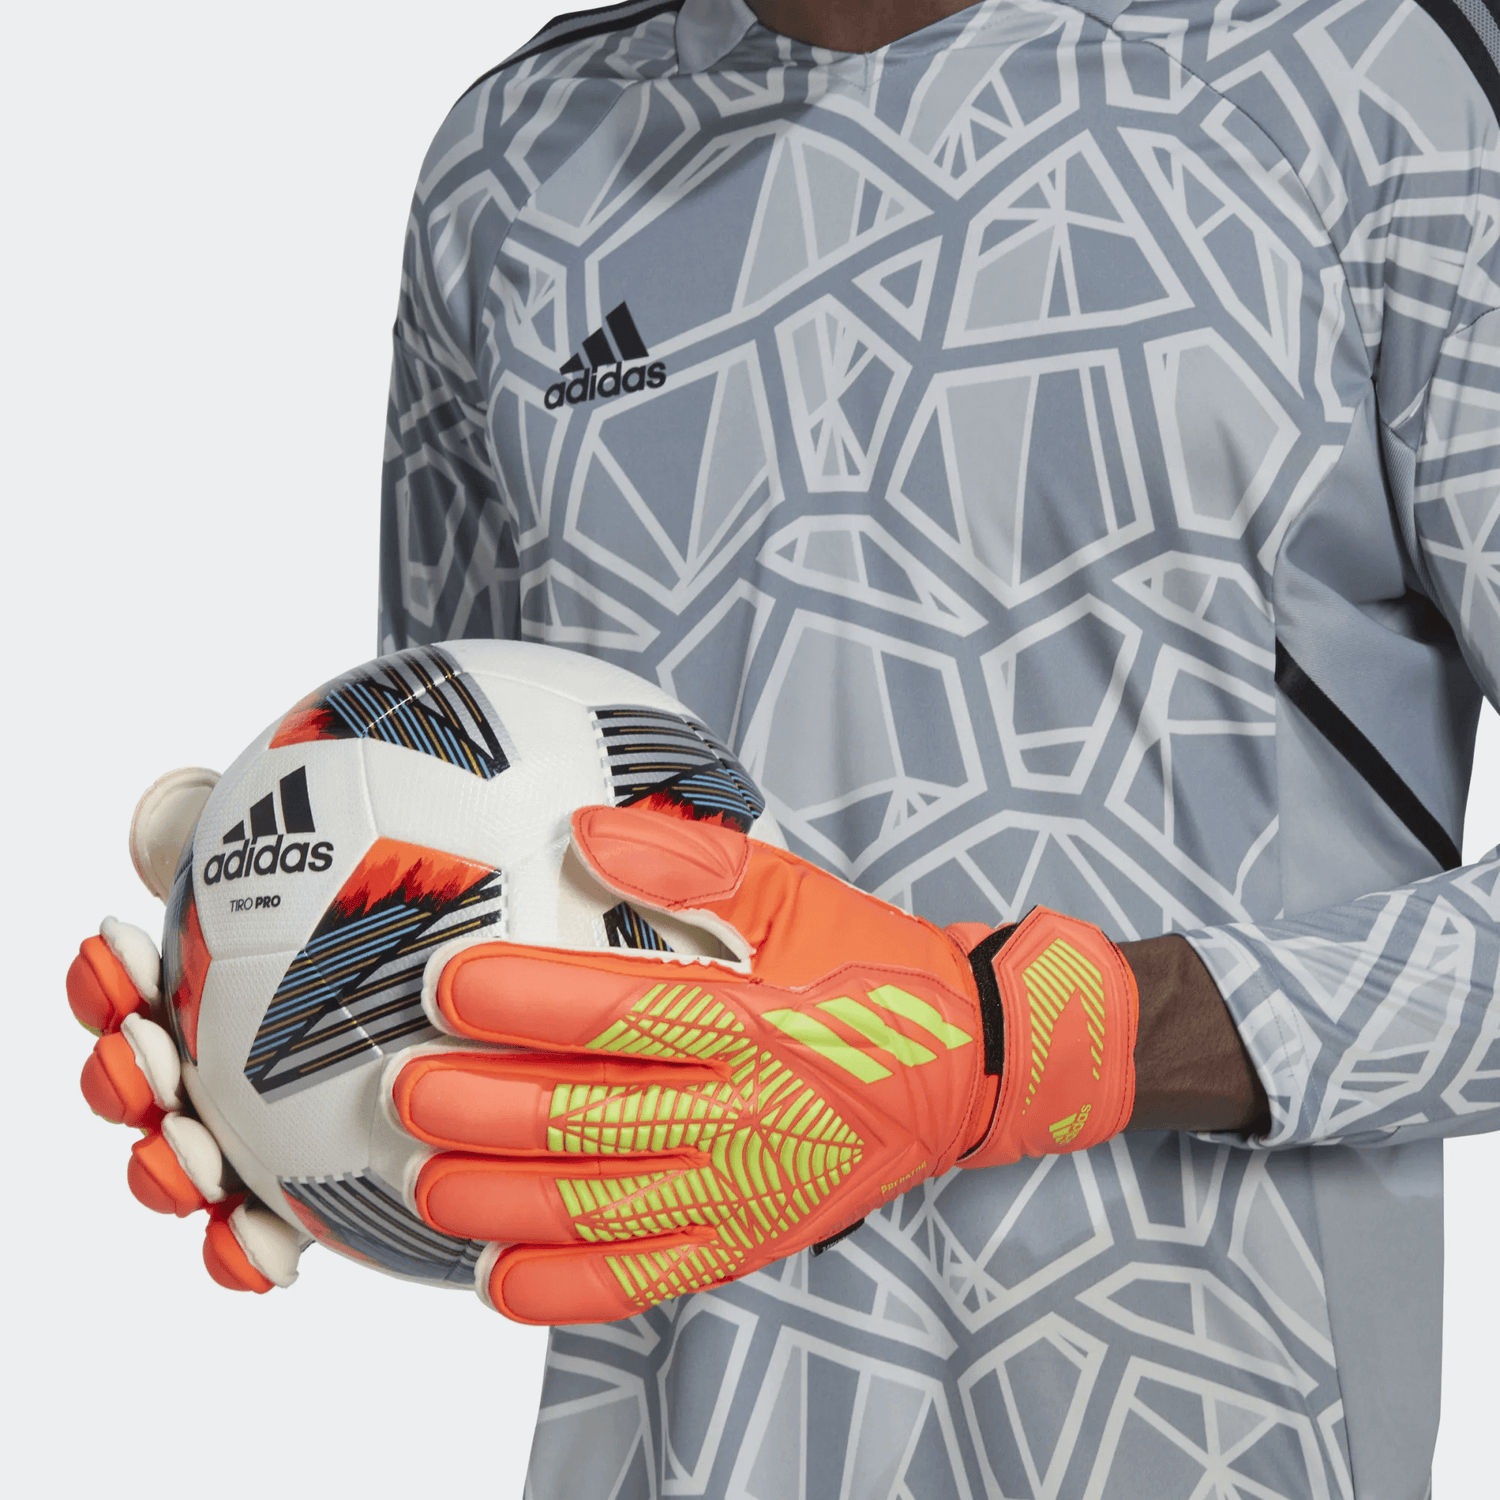 adidas Predator GL MTC FS Goalkeeper Glove Solar Red (Model 1)